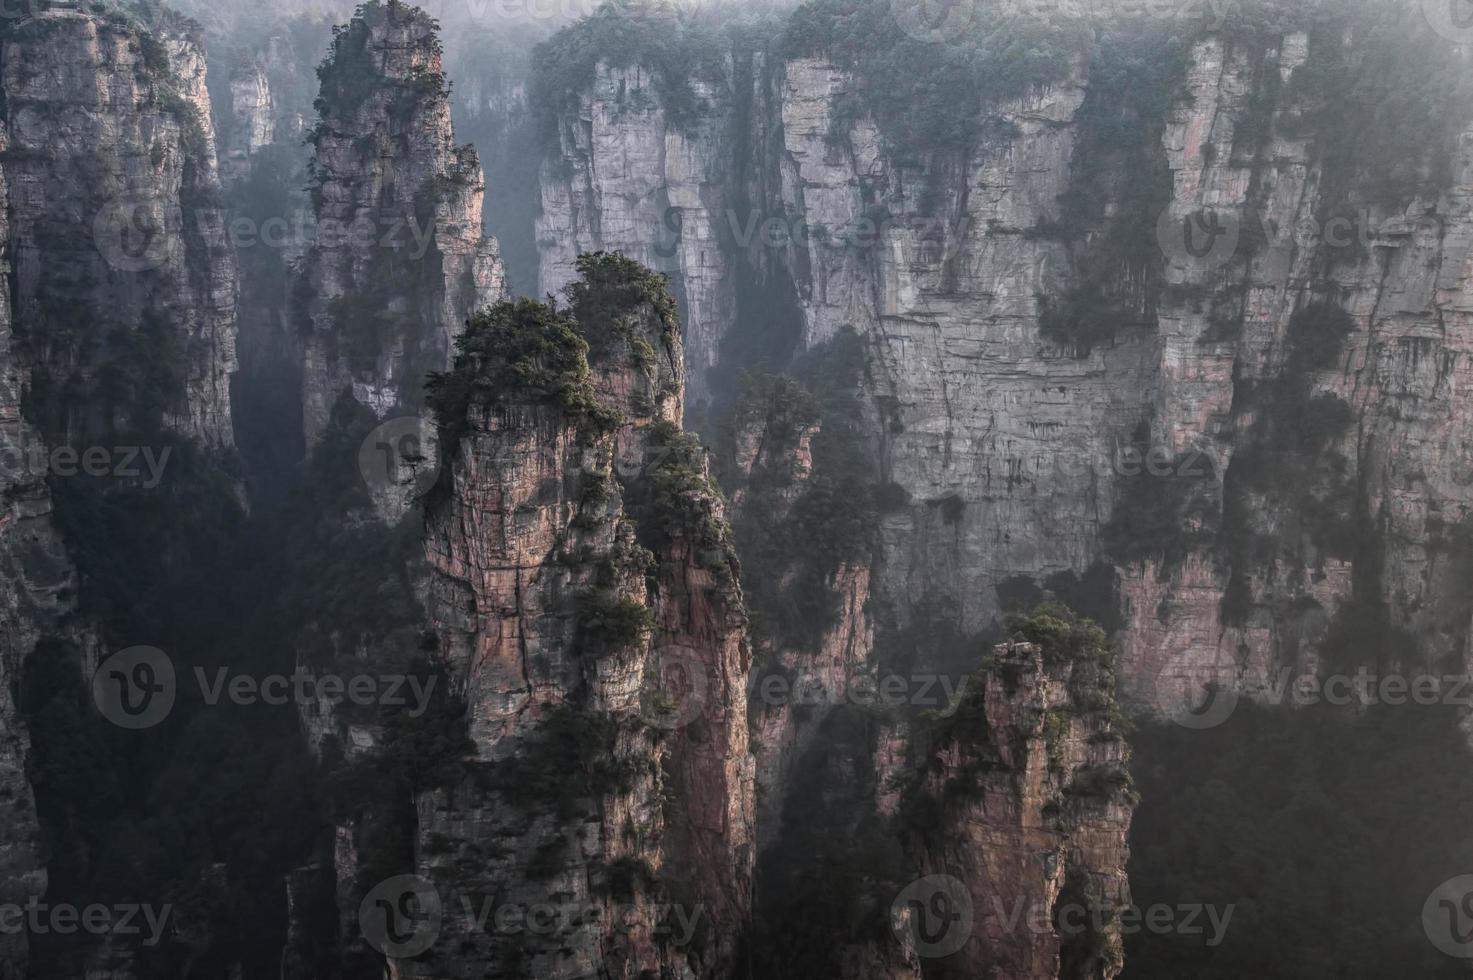 Zhangjiajie National Forest Park, Hunan, China photo